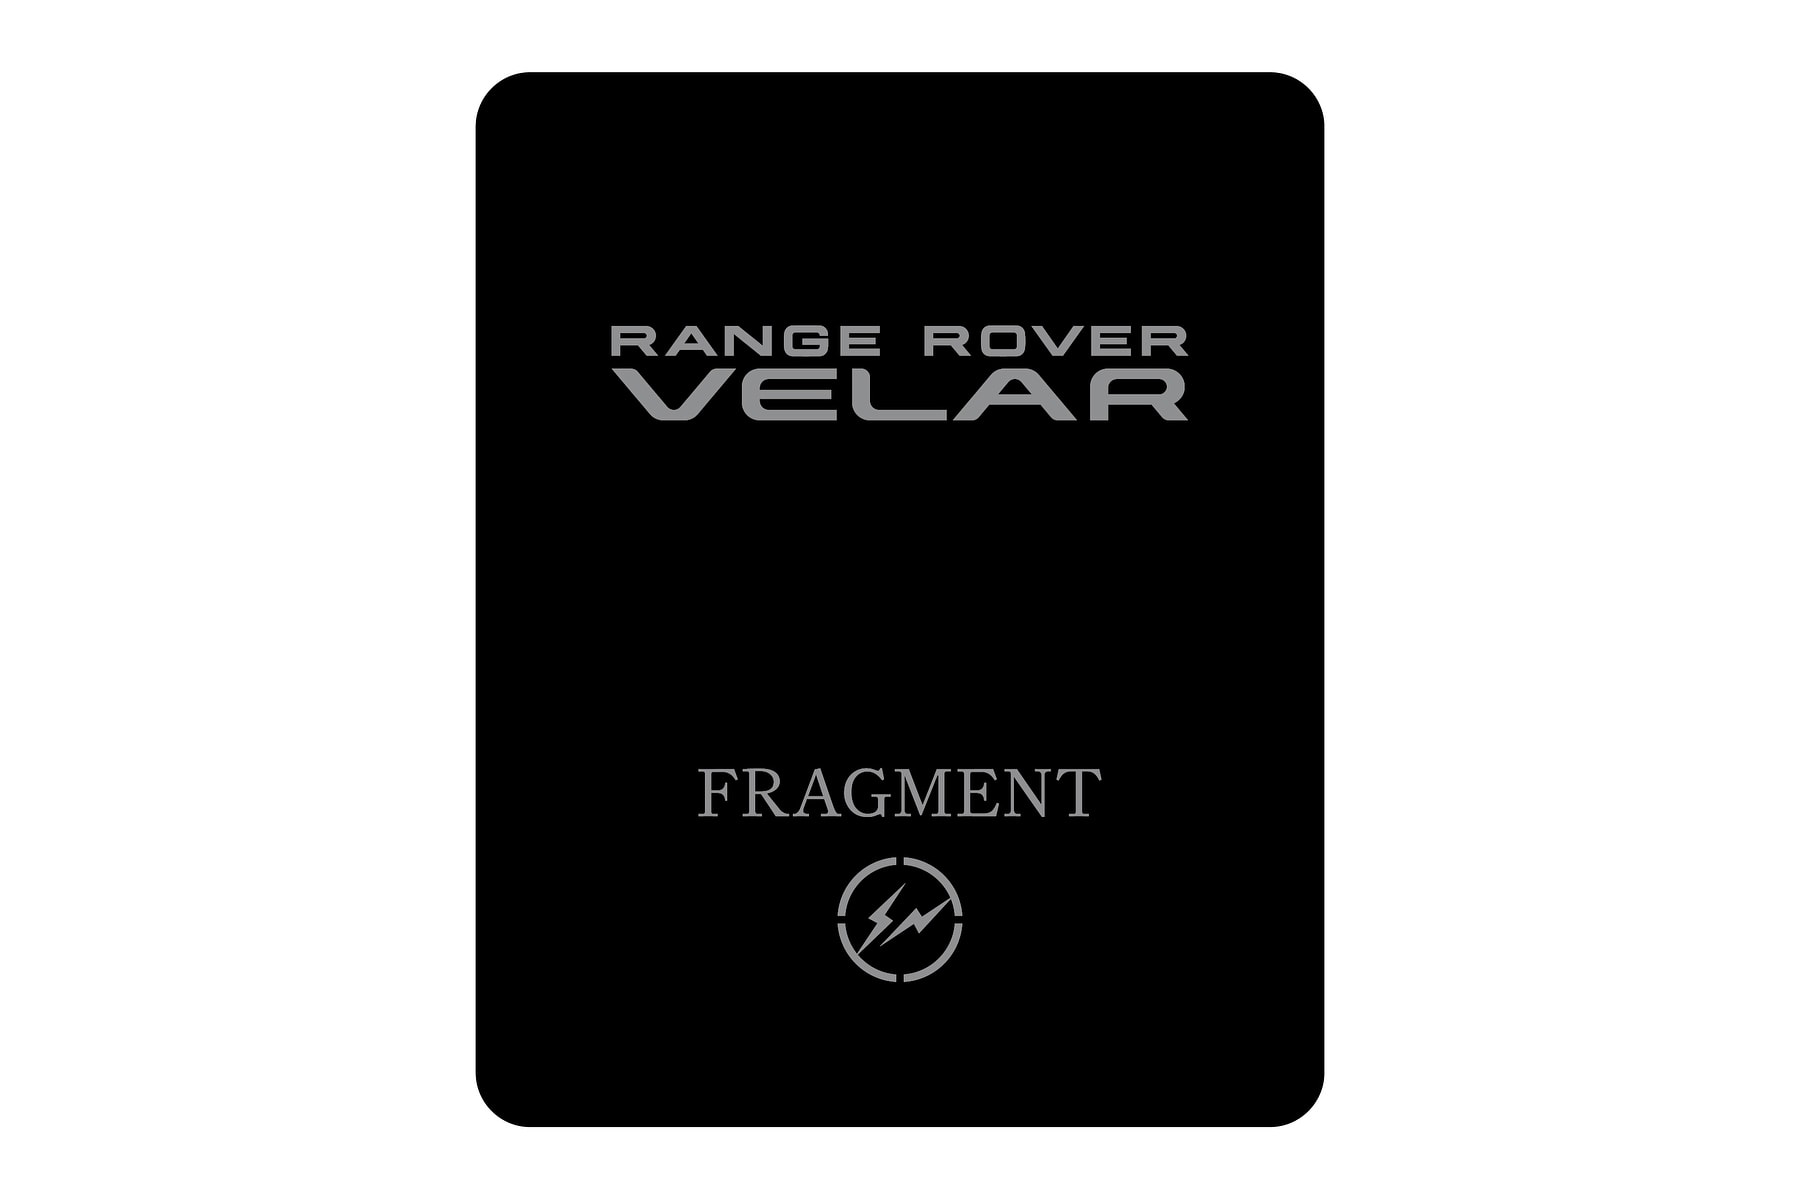 教父參謀 - 藤原浩以 Fragment 之名策劃 Range Rover Velar 發佈